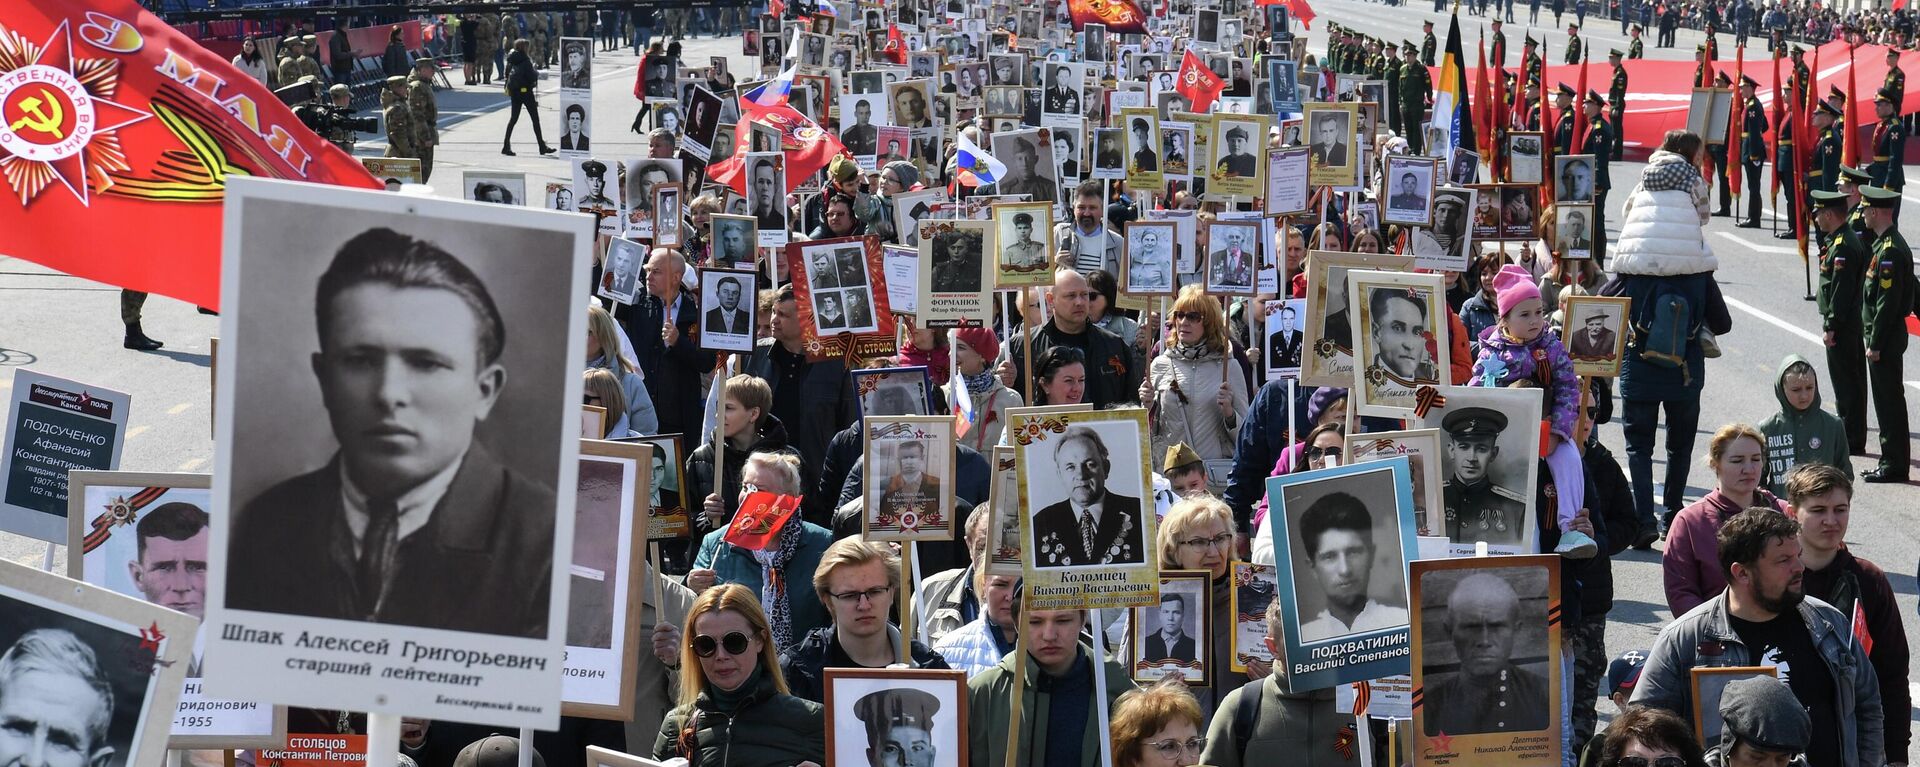 La marcha del Regimiento Inmortal, el 9 de mayo de 2022 - Sputnik Mundo, 1920, 09.05.2022